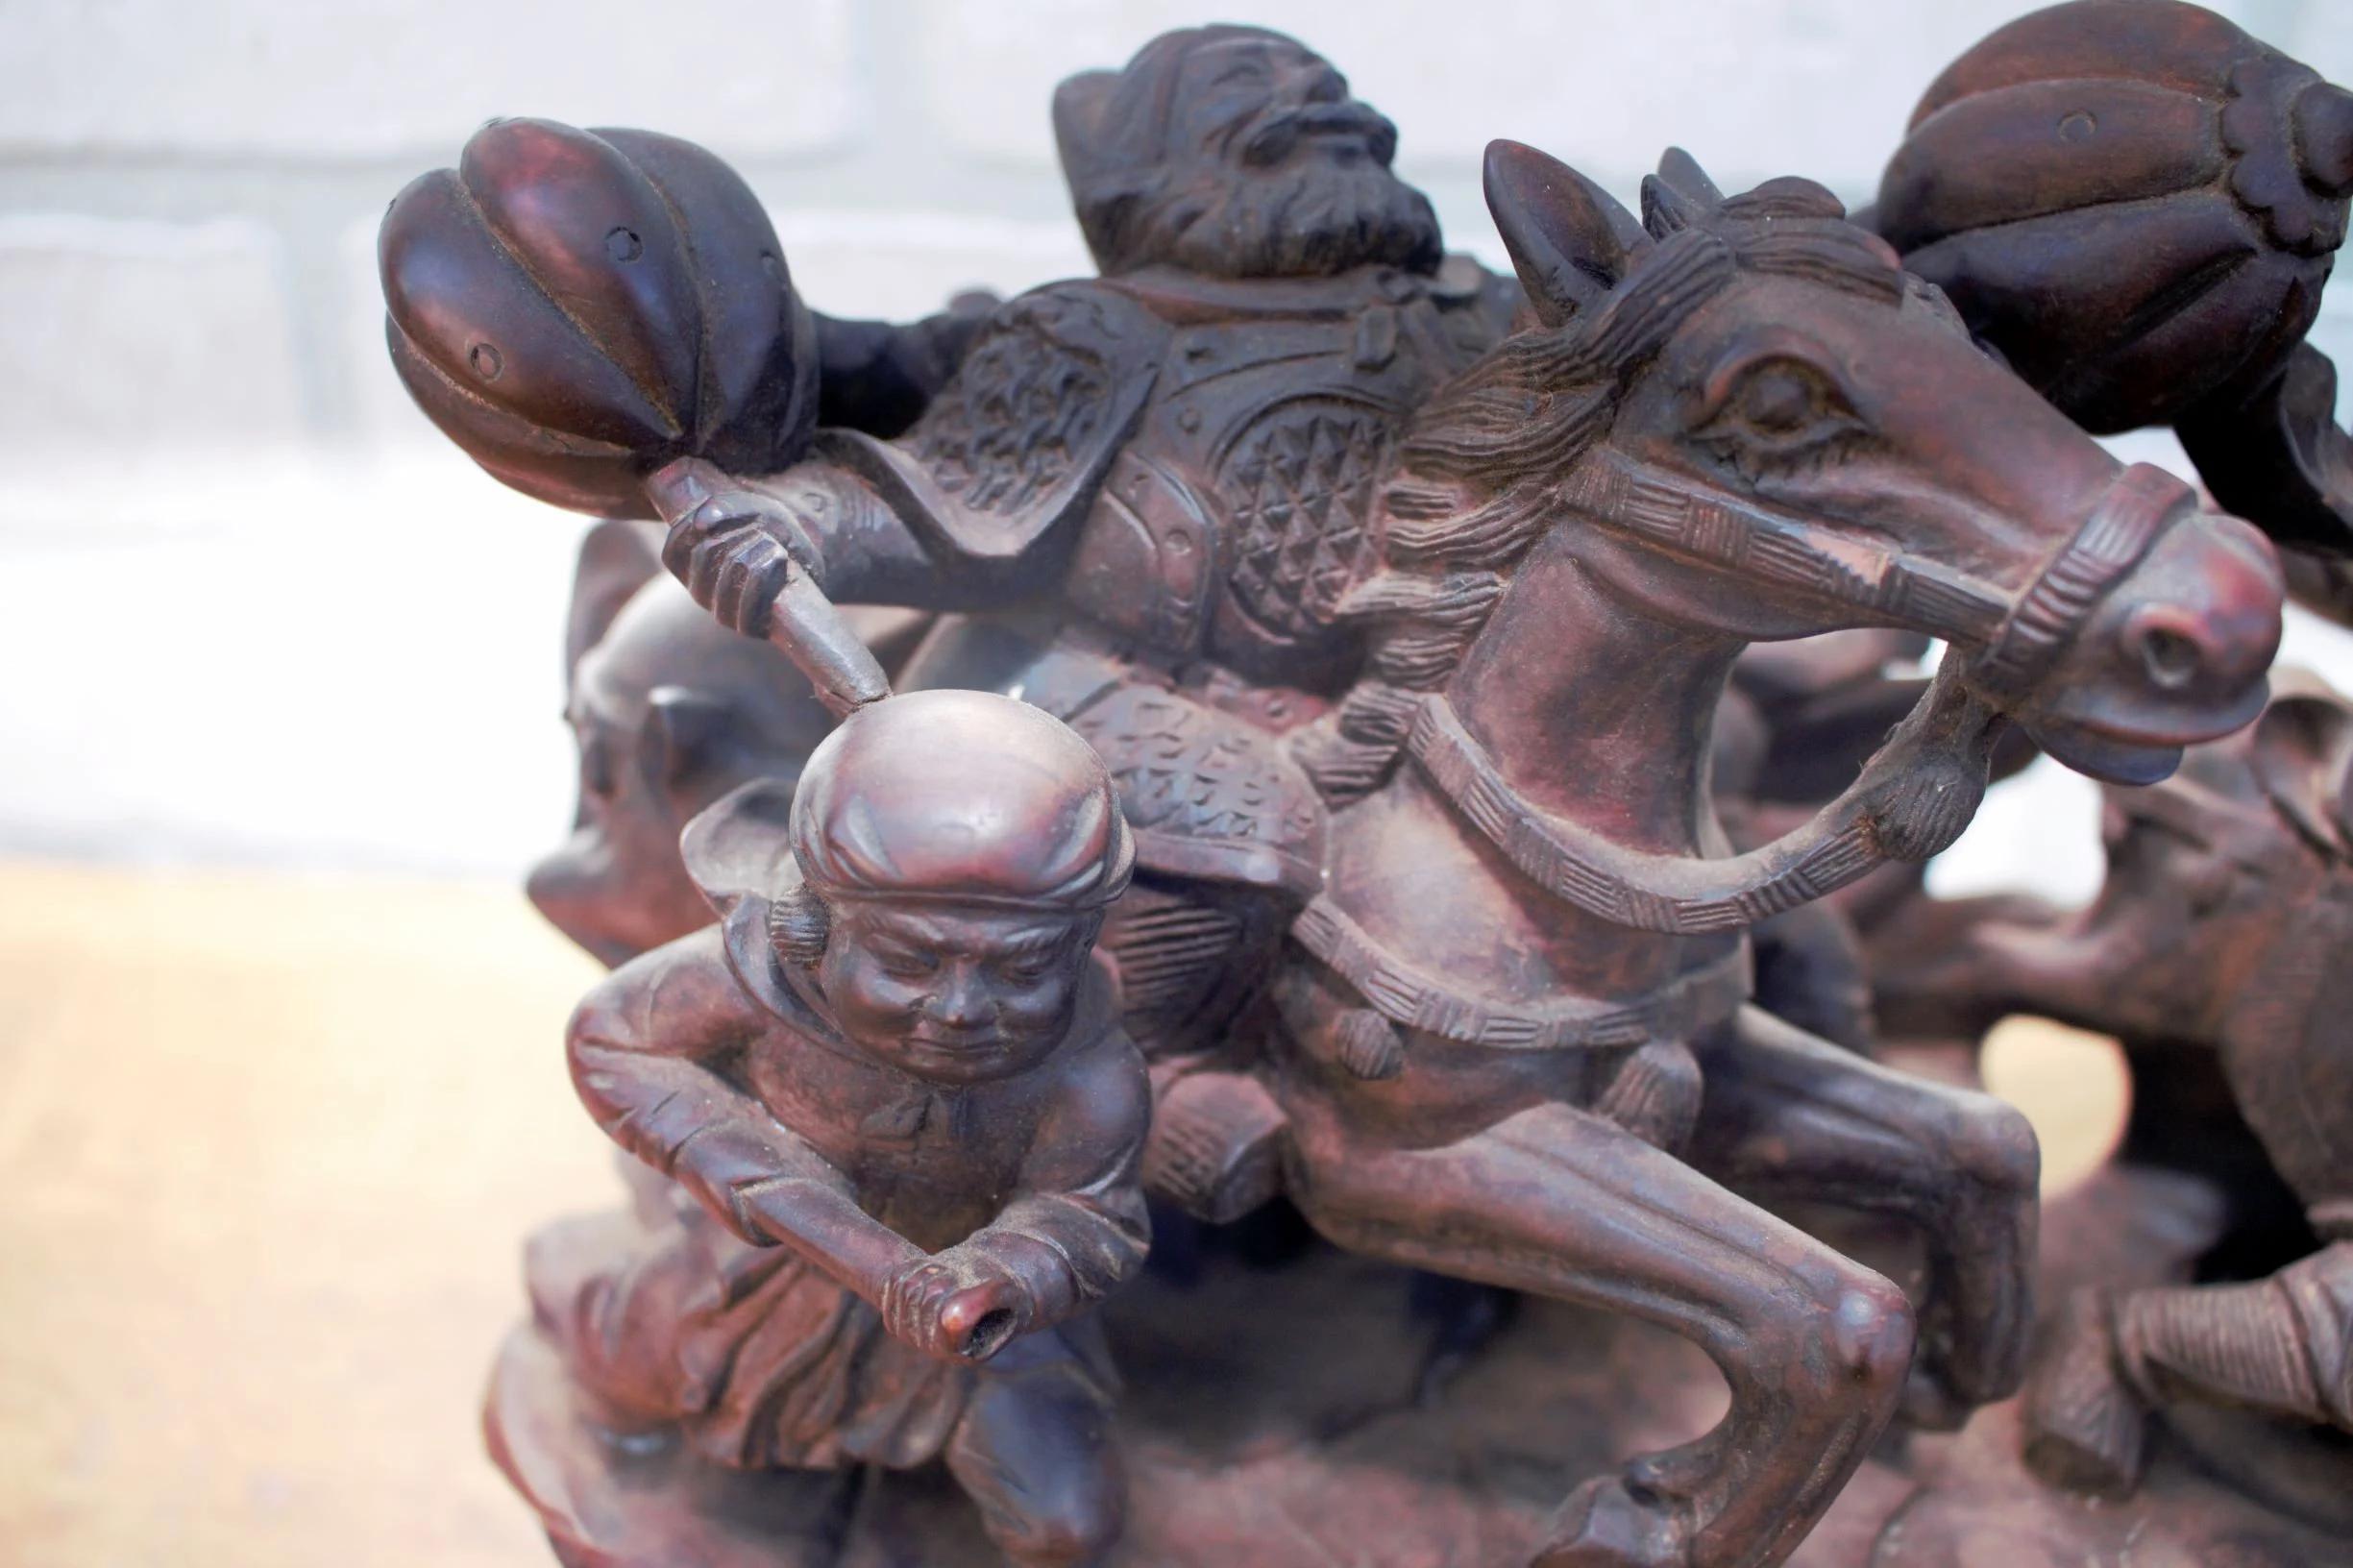 Vintage Asian geschnitzt verzierten Holz Statue auf Basis - 2 Stück

Diese geschnitzte Holzskulptur stellt vier Männer auf vier Pferden in der Schlacht dar. Die Figuren stehen auf einem Holzsockel. Dieses Stück würde auf Ihrem Kaminsims oder als